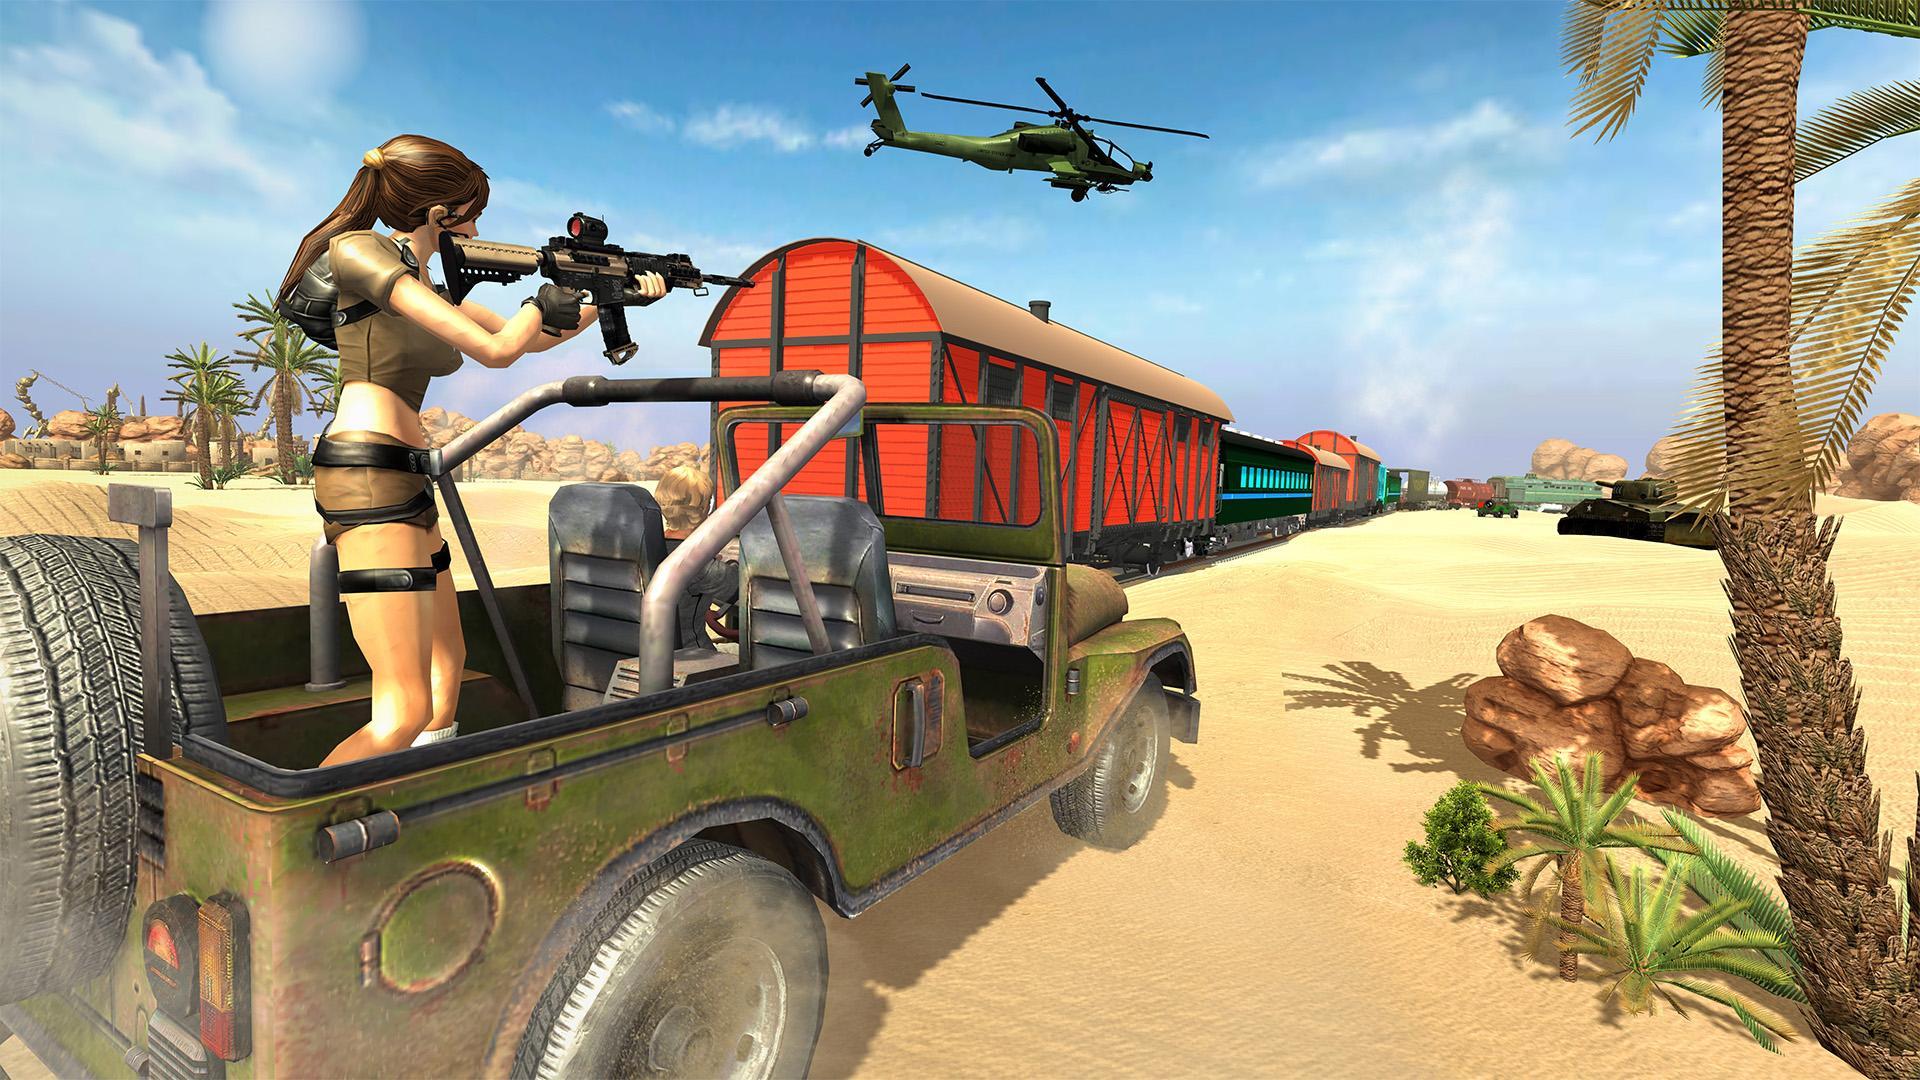 Screenshot 1 of Agente encubierto: juego de disparos de francotirador 3D 2019 1.47